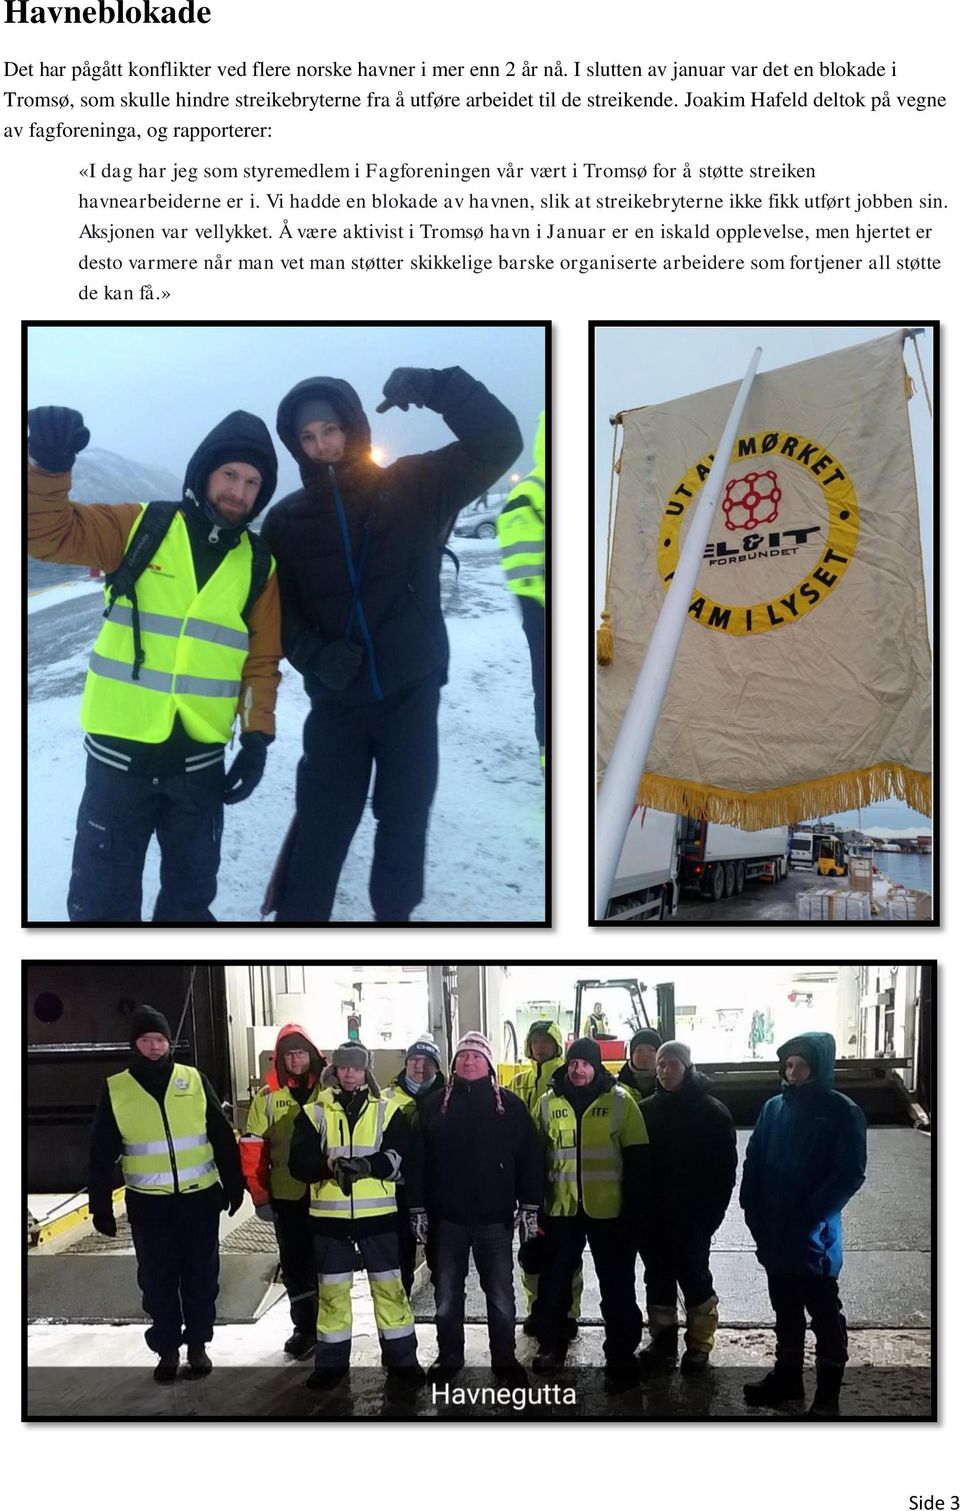 Joakim Hafeld deltok på vegne av fagforeninga, og rapporterer: «I dag har jeg som styremedlem i Fagforeningen vår vært i Tromsø for å støtte streiken havnearbeiderne er i.